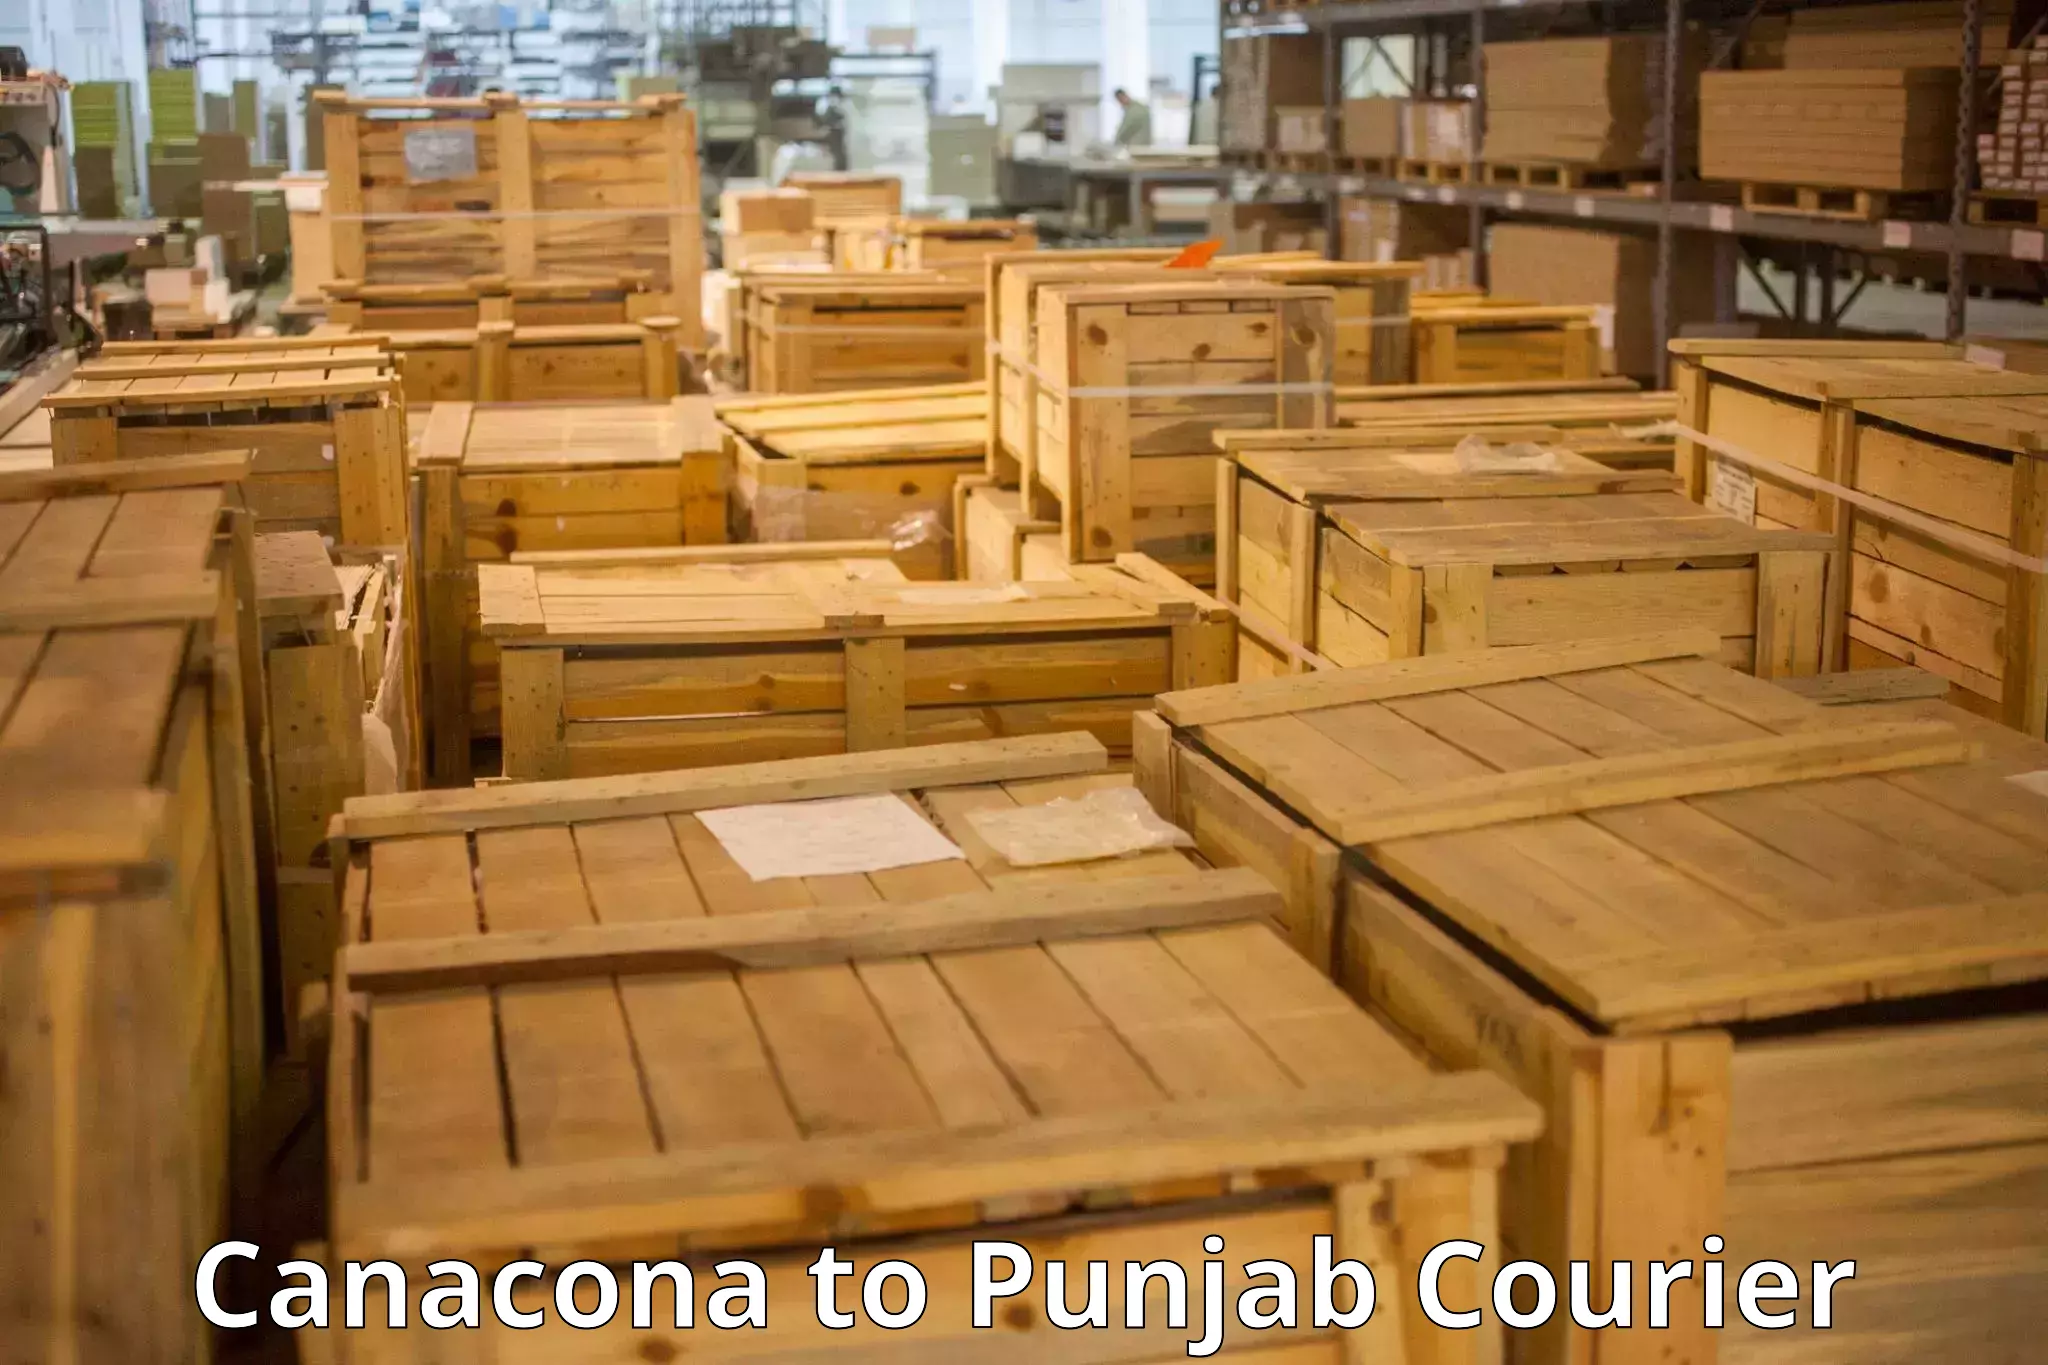 Luggage shipment strategy Canacona to Punjab